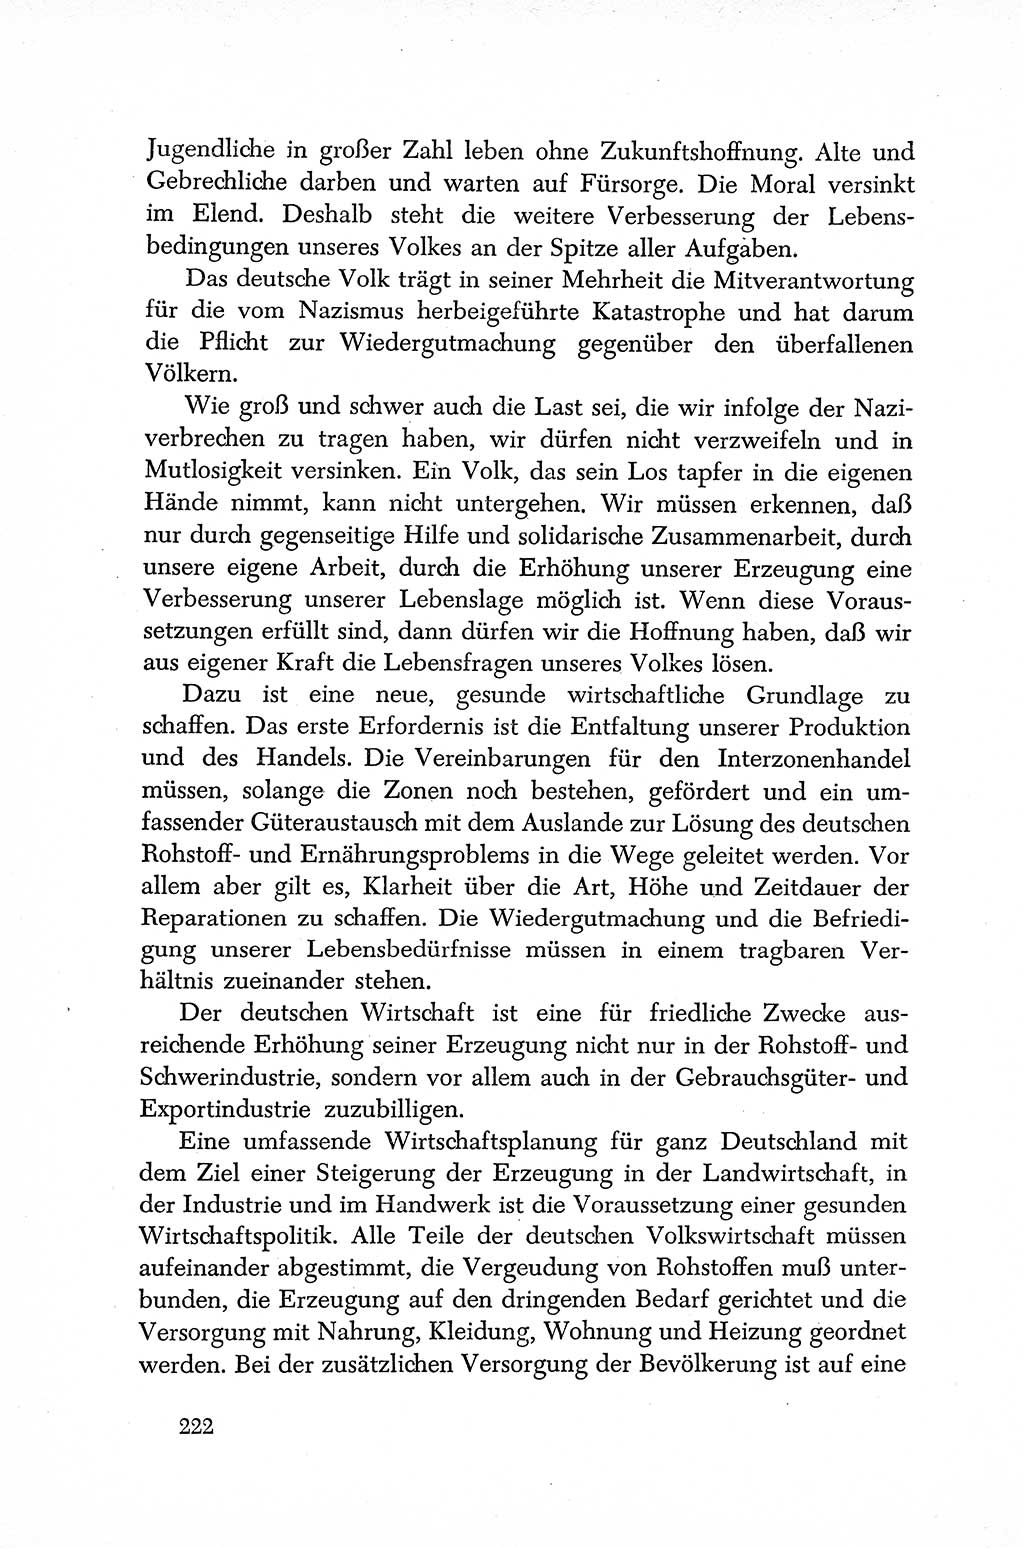 Dokumente der Sozialistischen Einheitspartei Deutschlands (SED) [Sowjetische Besatzungszone (SBZ) Deutschlands] 1946-1948, Seite 222 (Dok. SED SBZ Dtl. 1946-1948, S. 222)